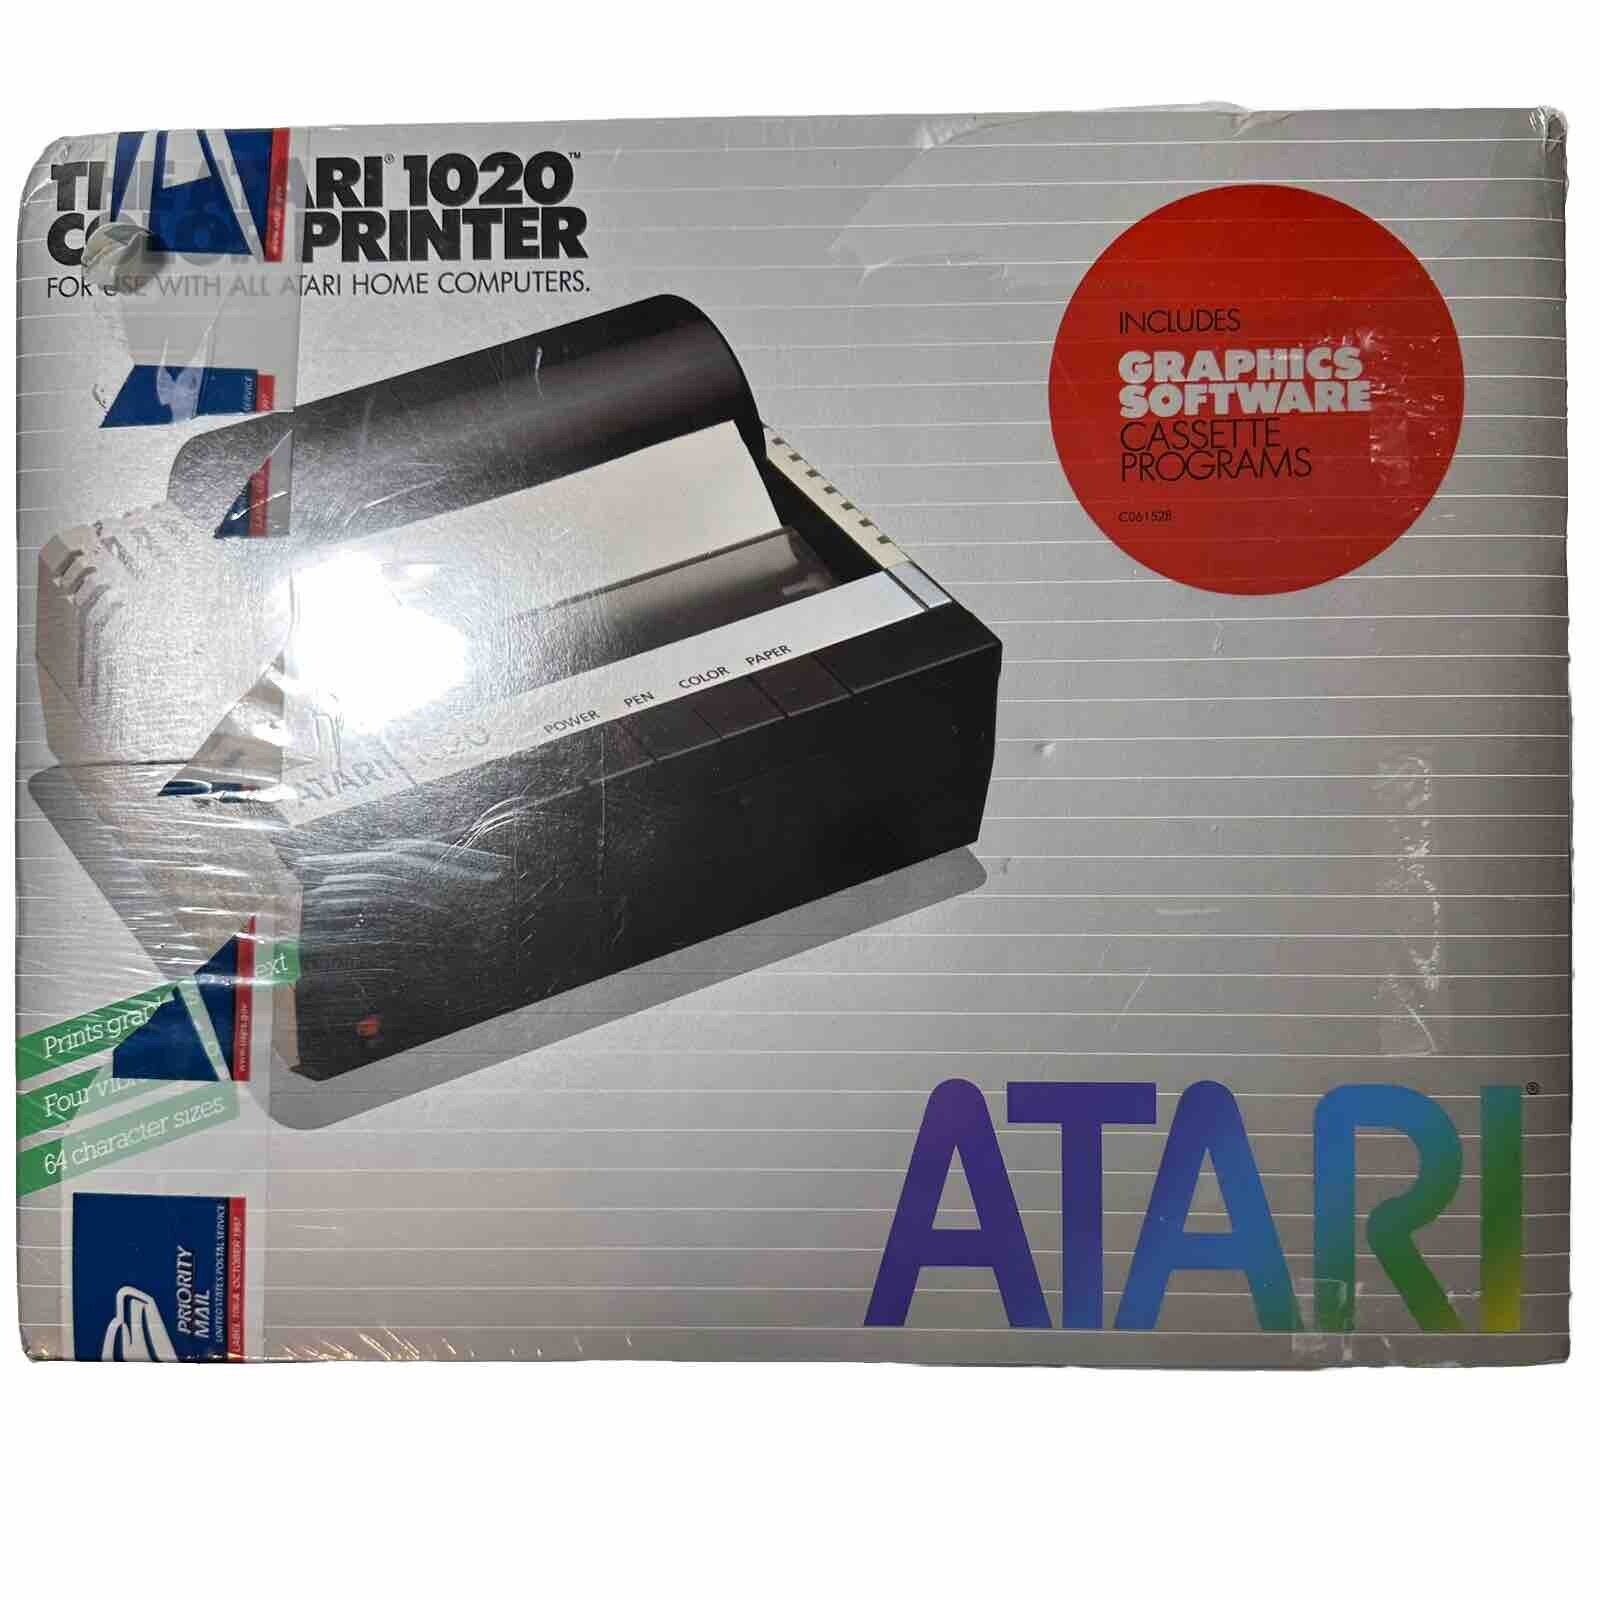 Vintage Atari 1020 Color Printer for Atari 400 800 XL XE New Factory Sealed Box